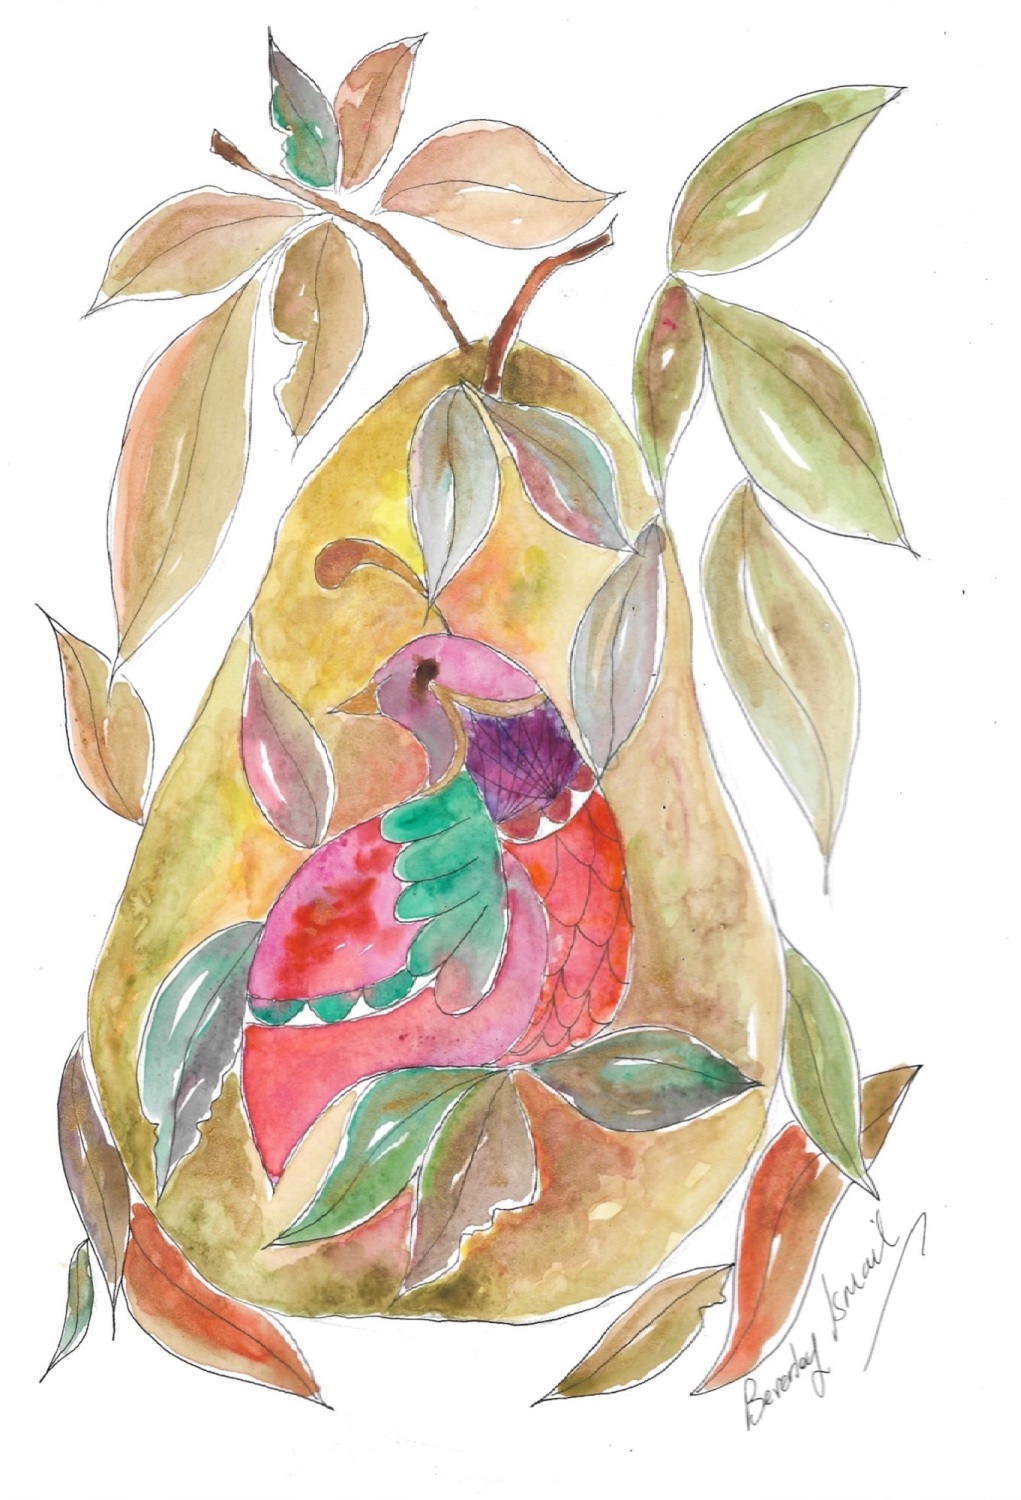 ‘Partridge in a pear tree’